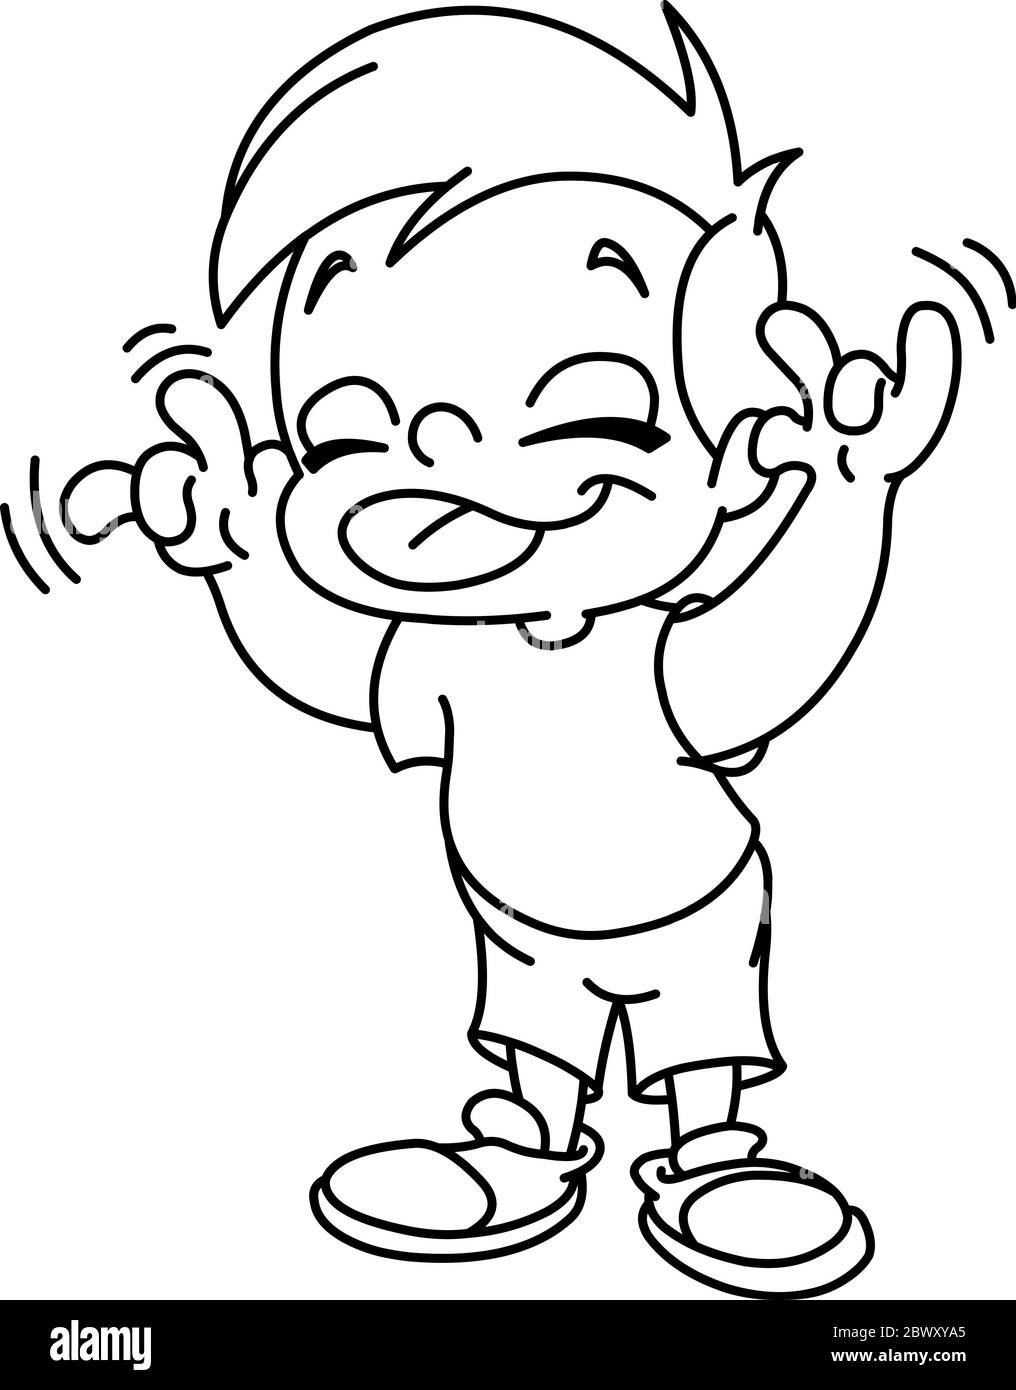 Skizzierte Kind, das ein Gesicht und zeigt seine Zunge. Vektor Linie Kunst Illustration Malseite. Stock Vektor